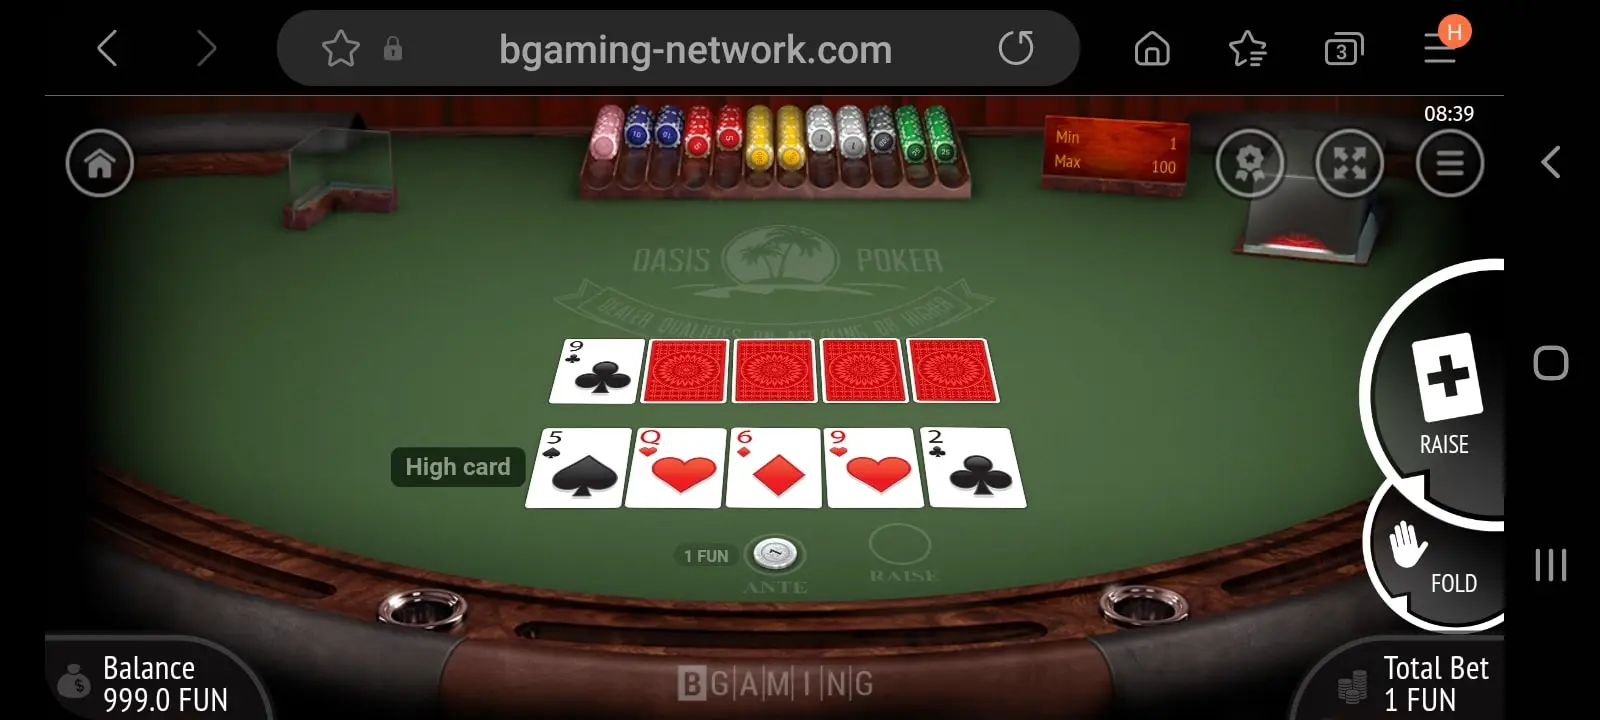 gunsbet casino app screenshot 4